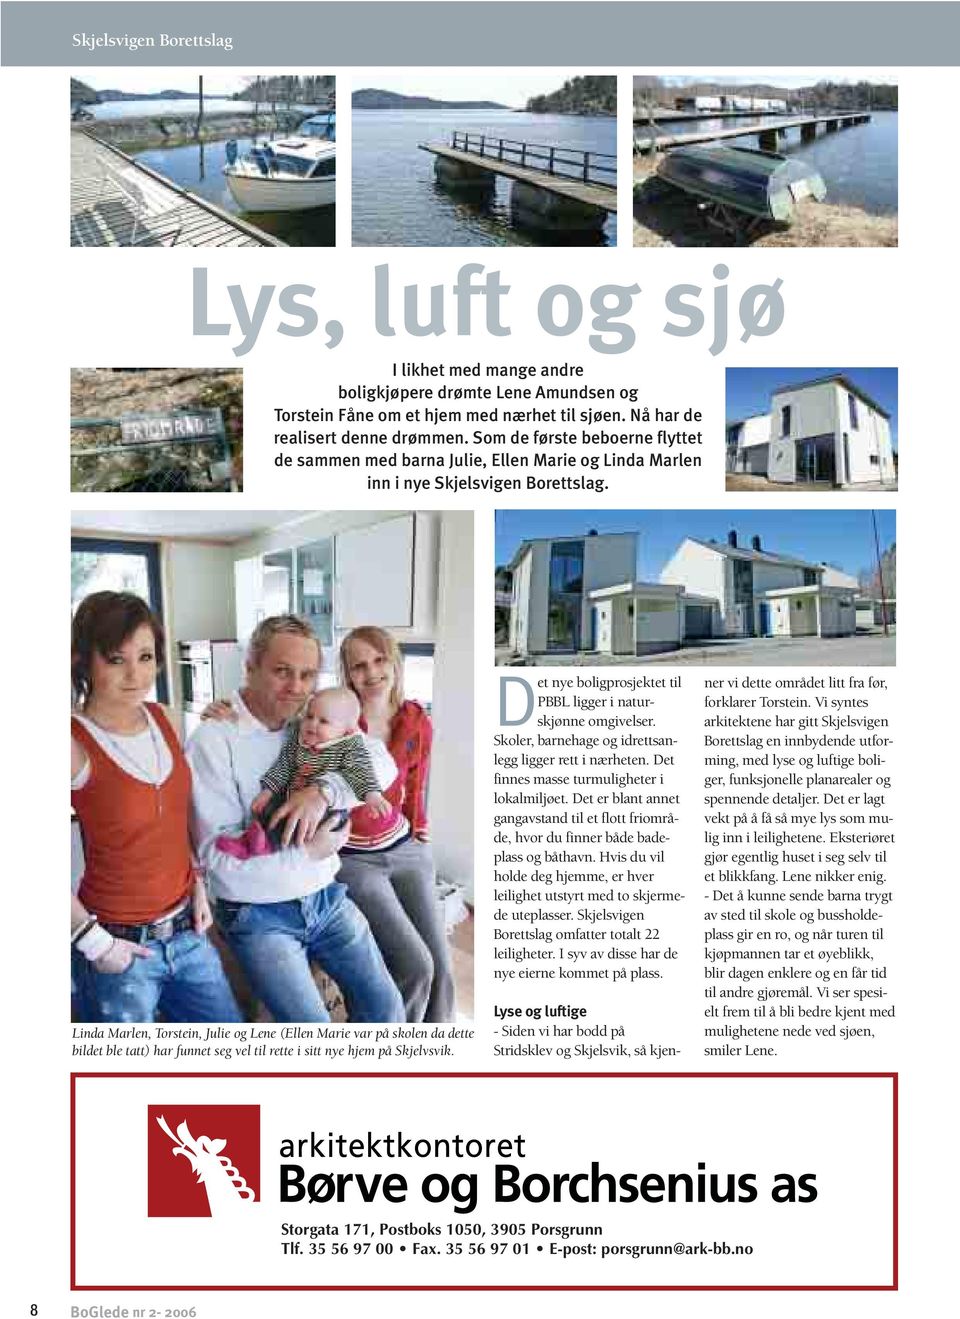 Linda Marlen, Torstein, Julie og Lene (Ellen Marie var på skolen da dette bildet ble tatt) har funnet seg vel til rette i sitt nye hjem på Skjelvsvik.